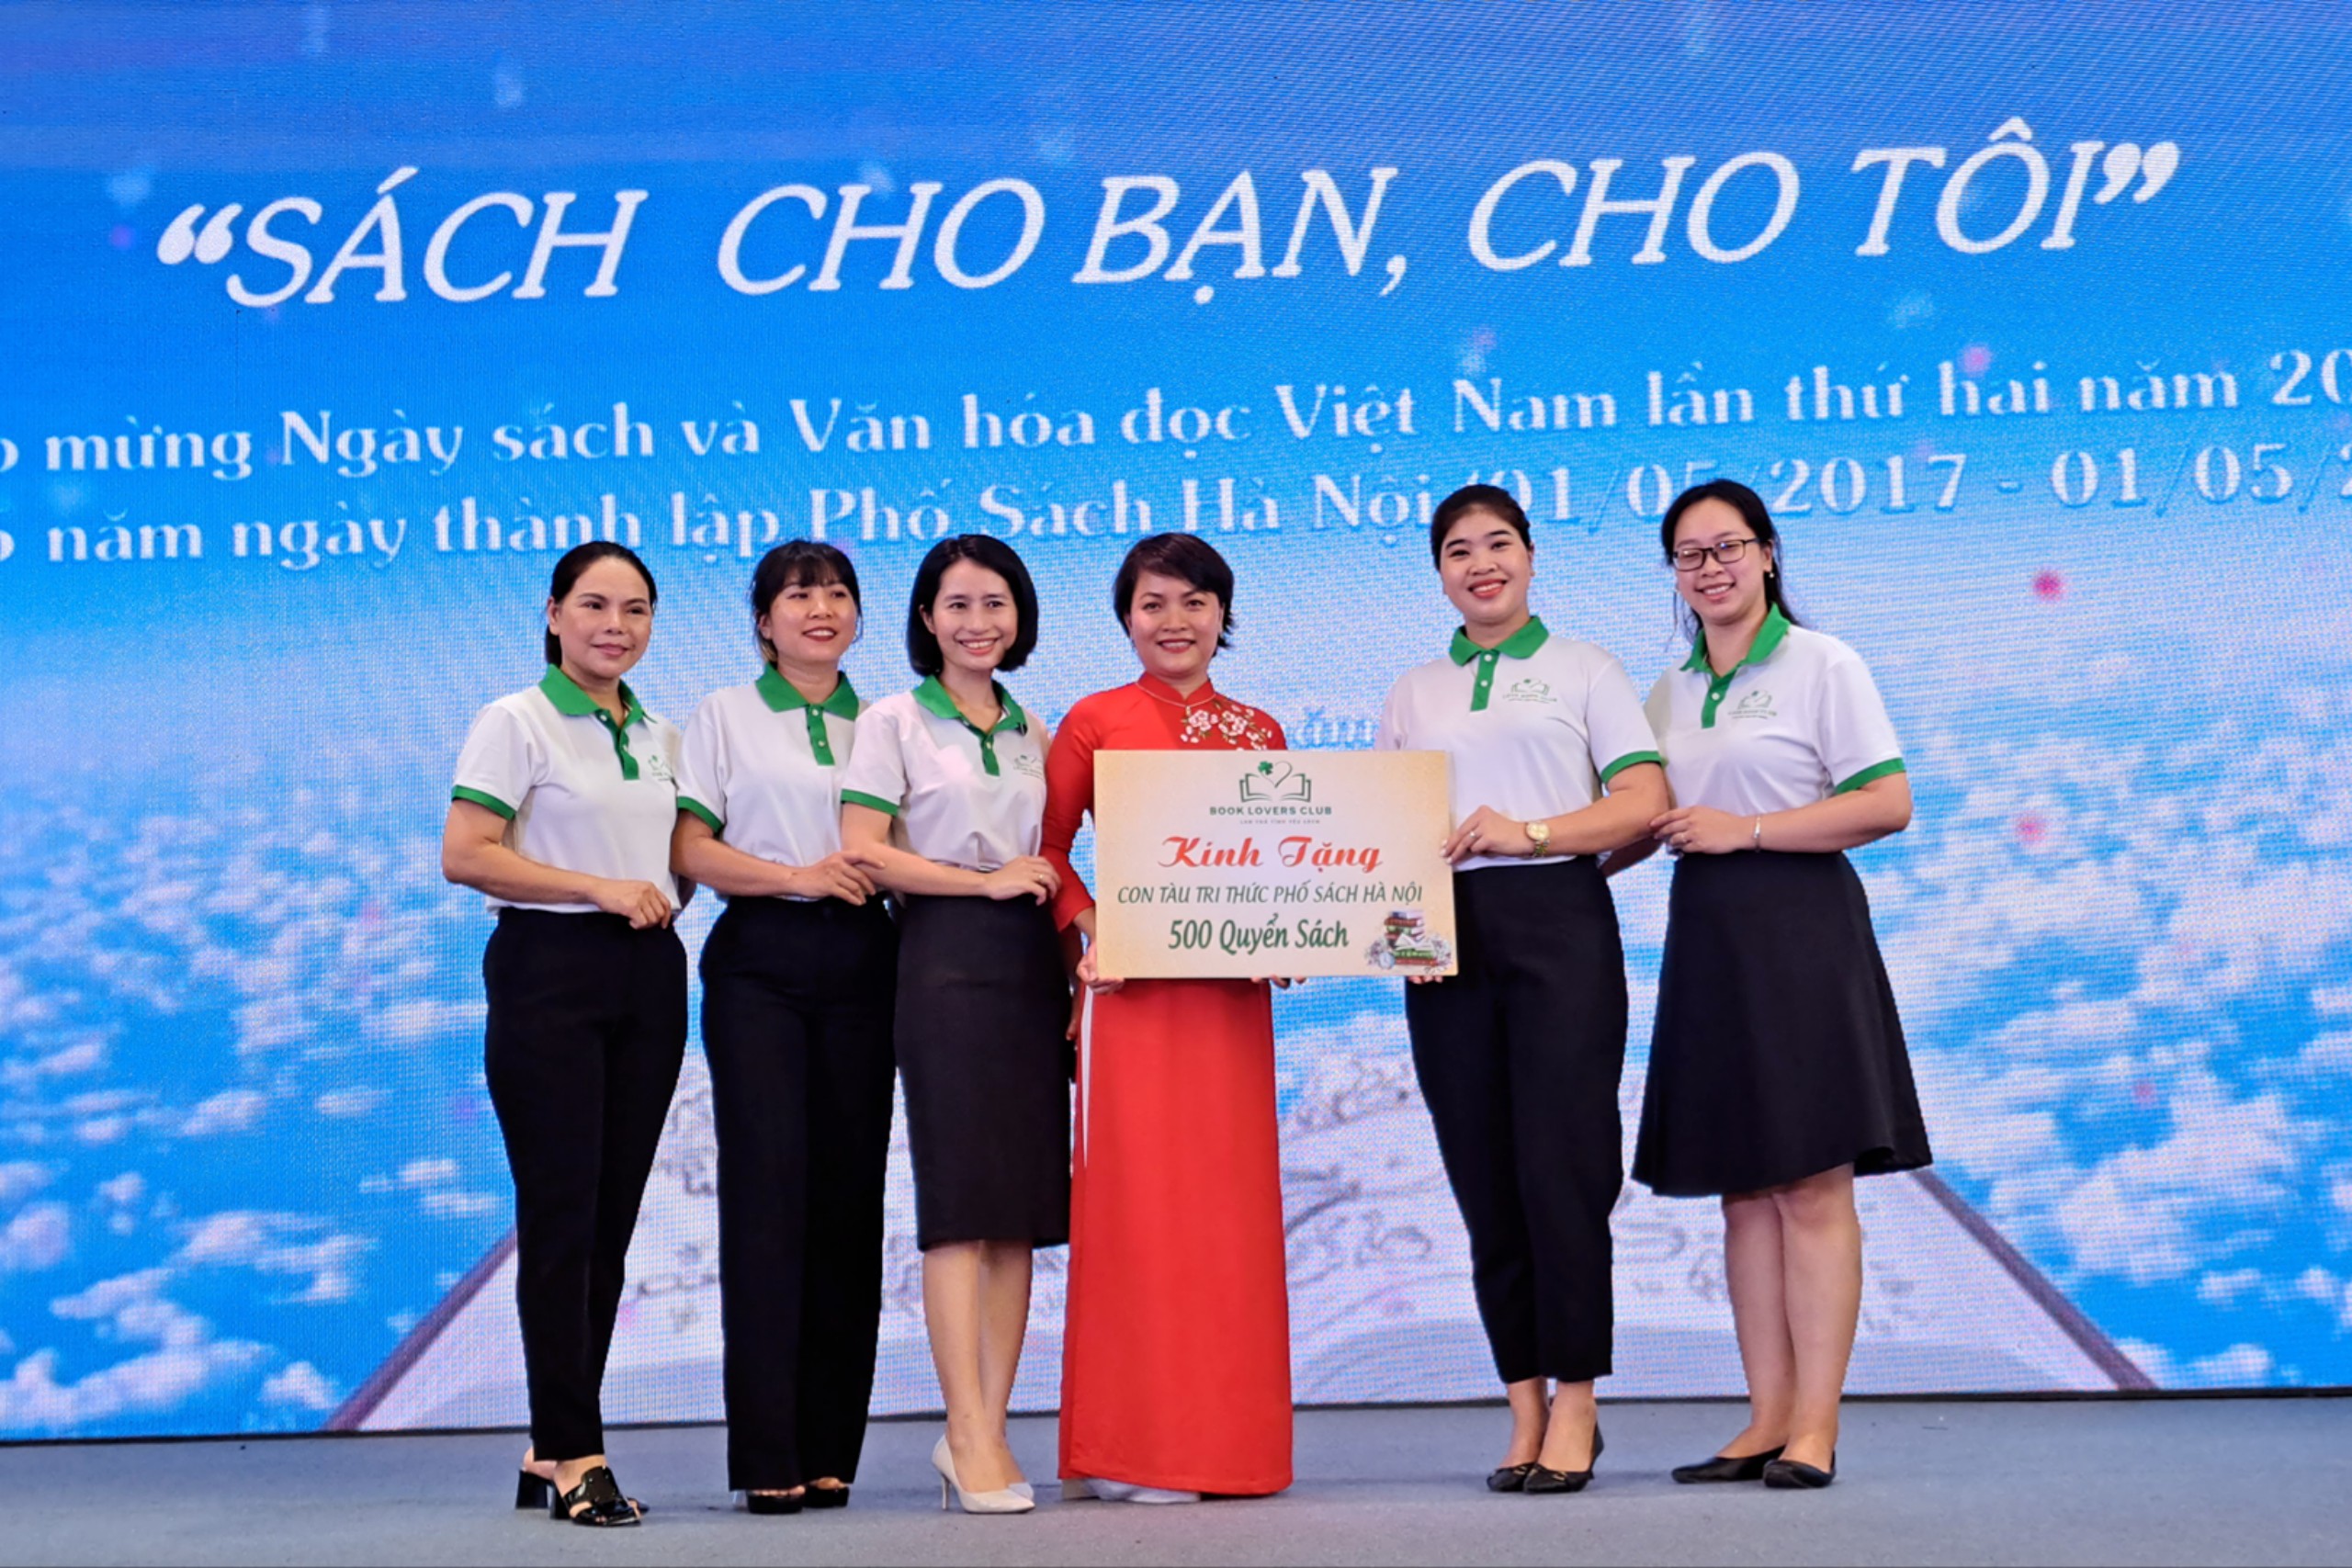 Tưng bừng các hoạt động chào mừng Ngày Sách và Văn hóa đọc Việt Nam tại Phố sách Hà Nội - 8